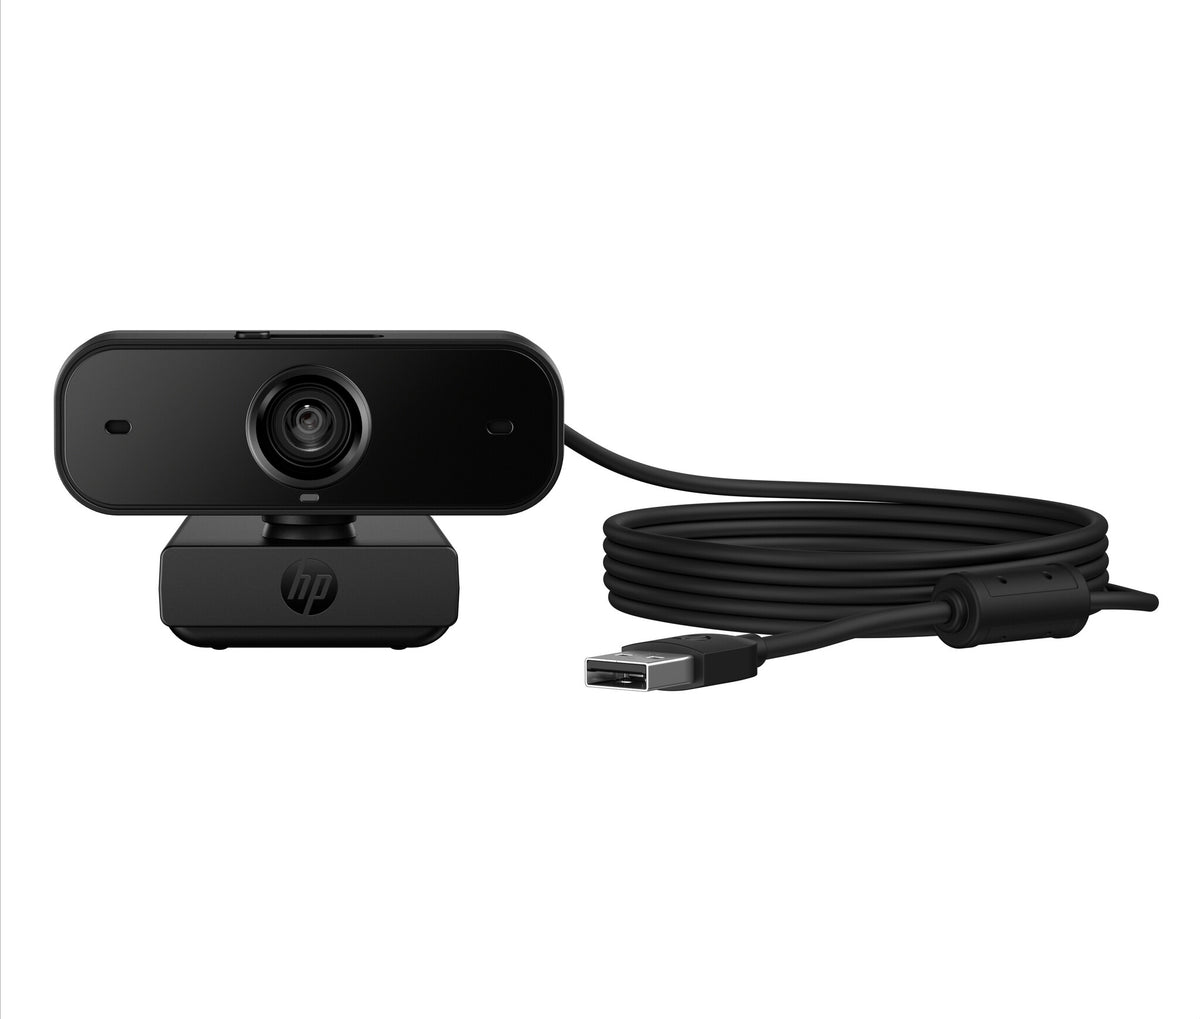 HP 435 - 2 MP 1920 x 1080 pixels webcam